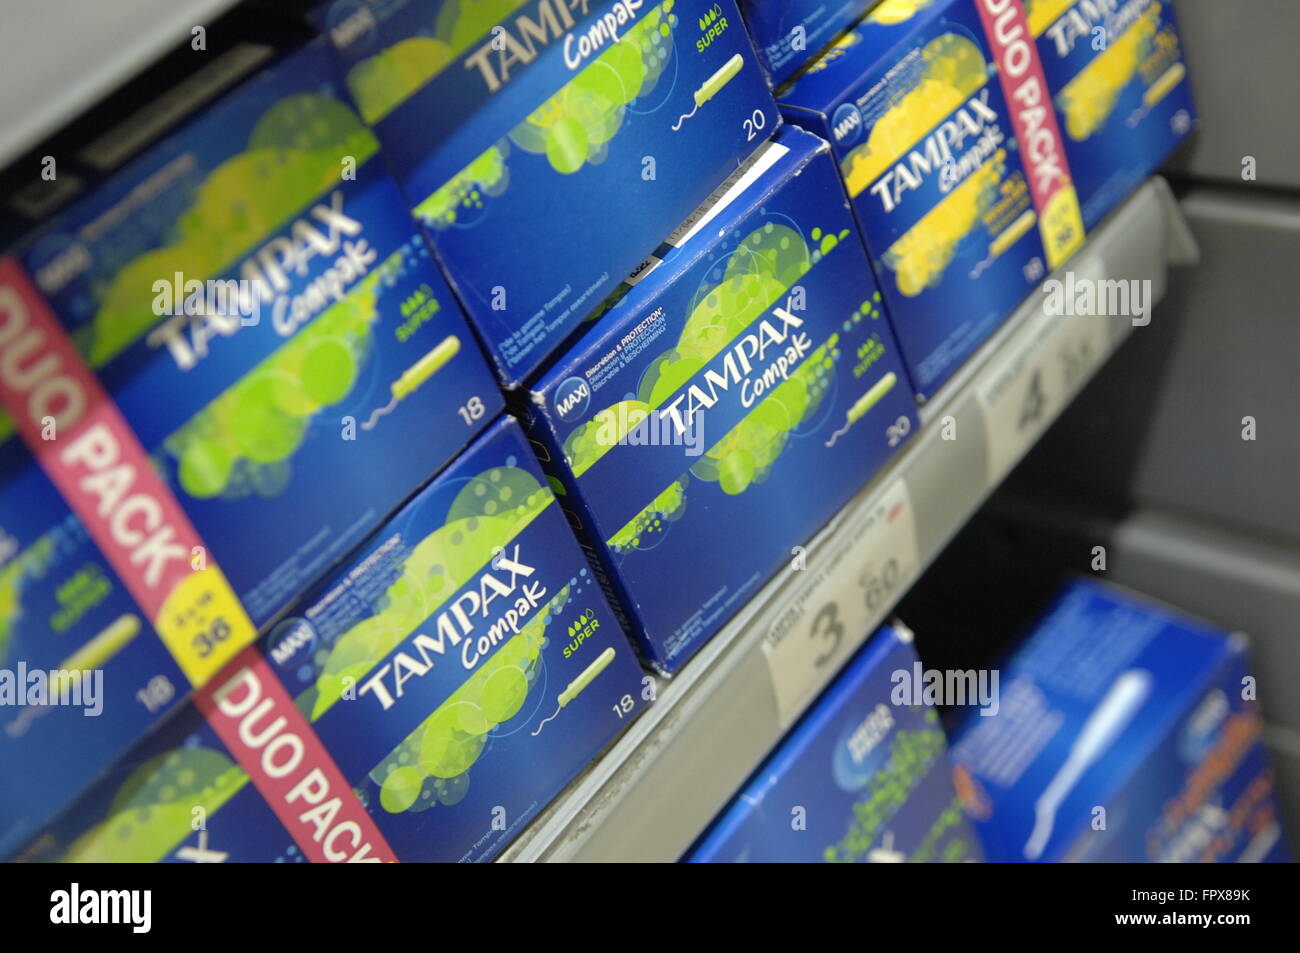 Tampones Tampax Pearl perfecta en archivar en un supermercado Carrefour  Fotografía de stock - Alamy